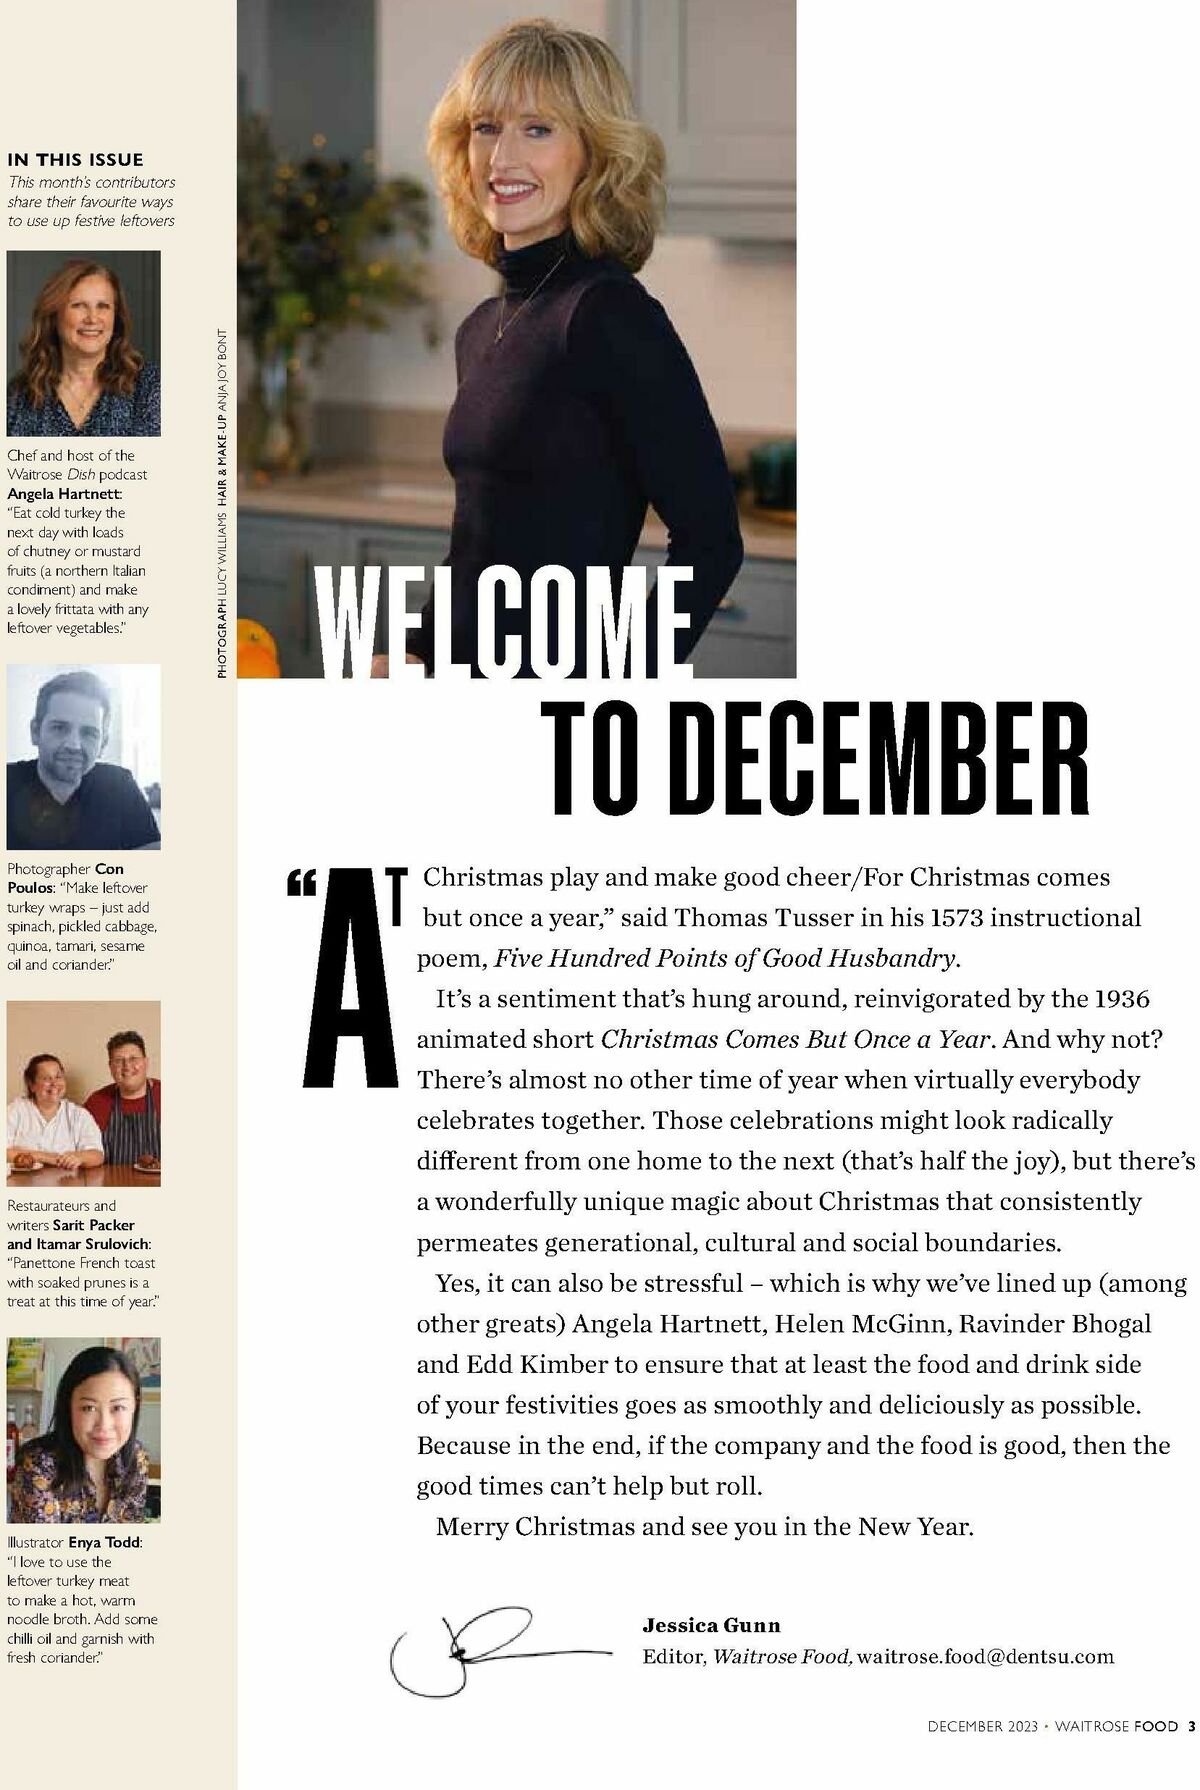 Waitrose Magazine December Offers from 1 December